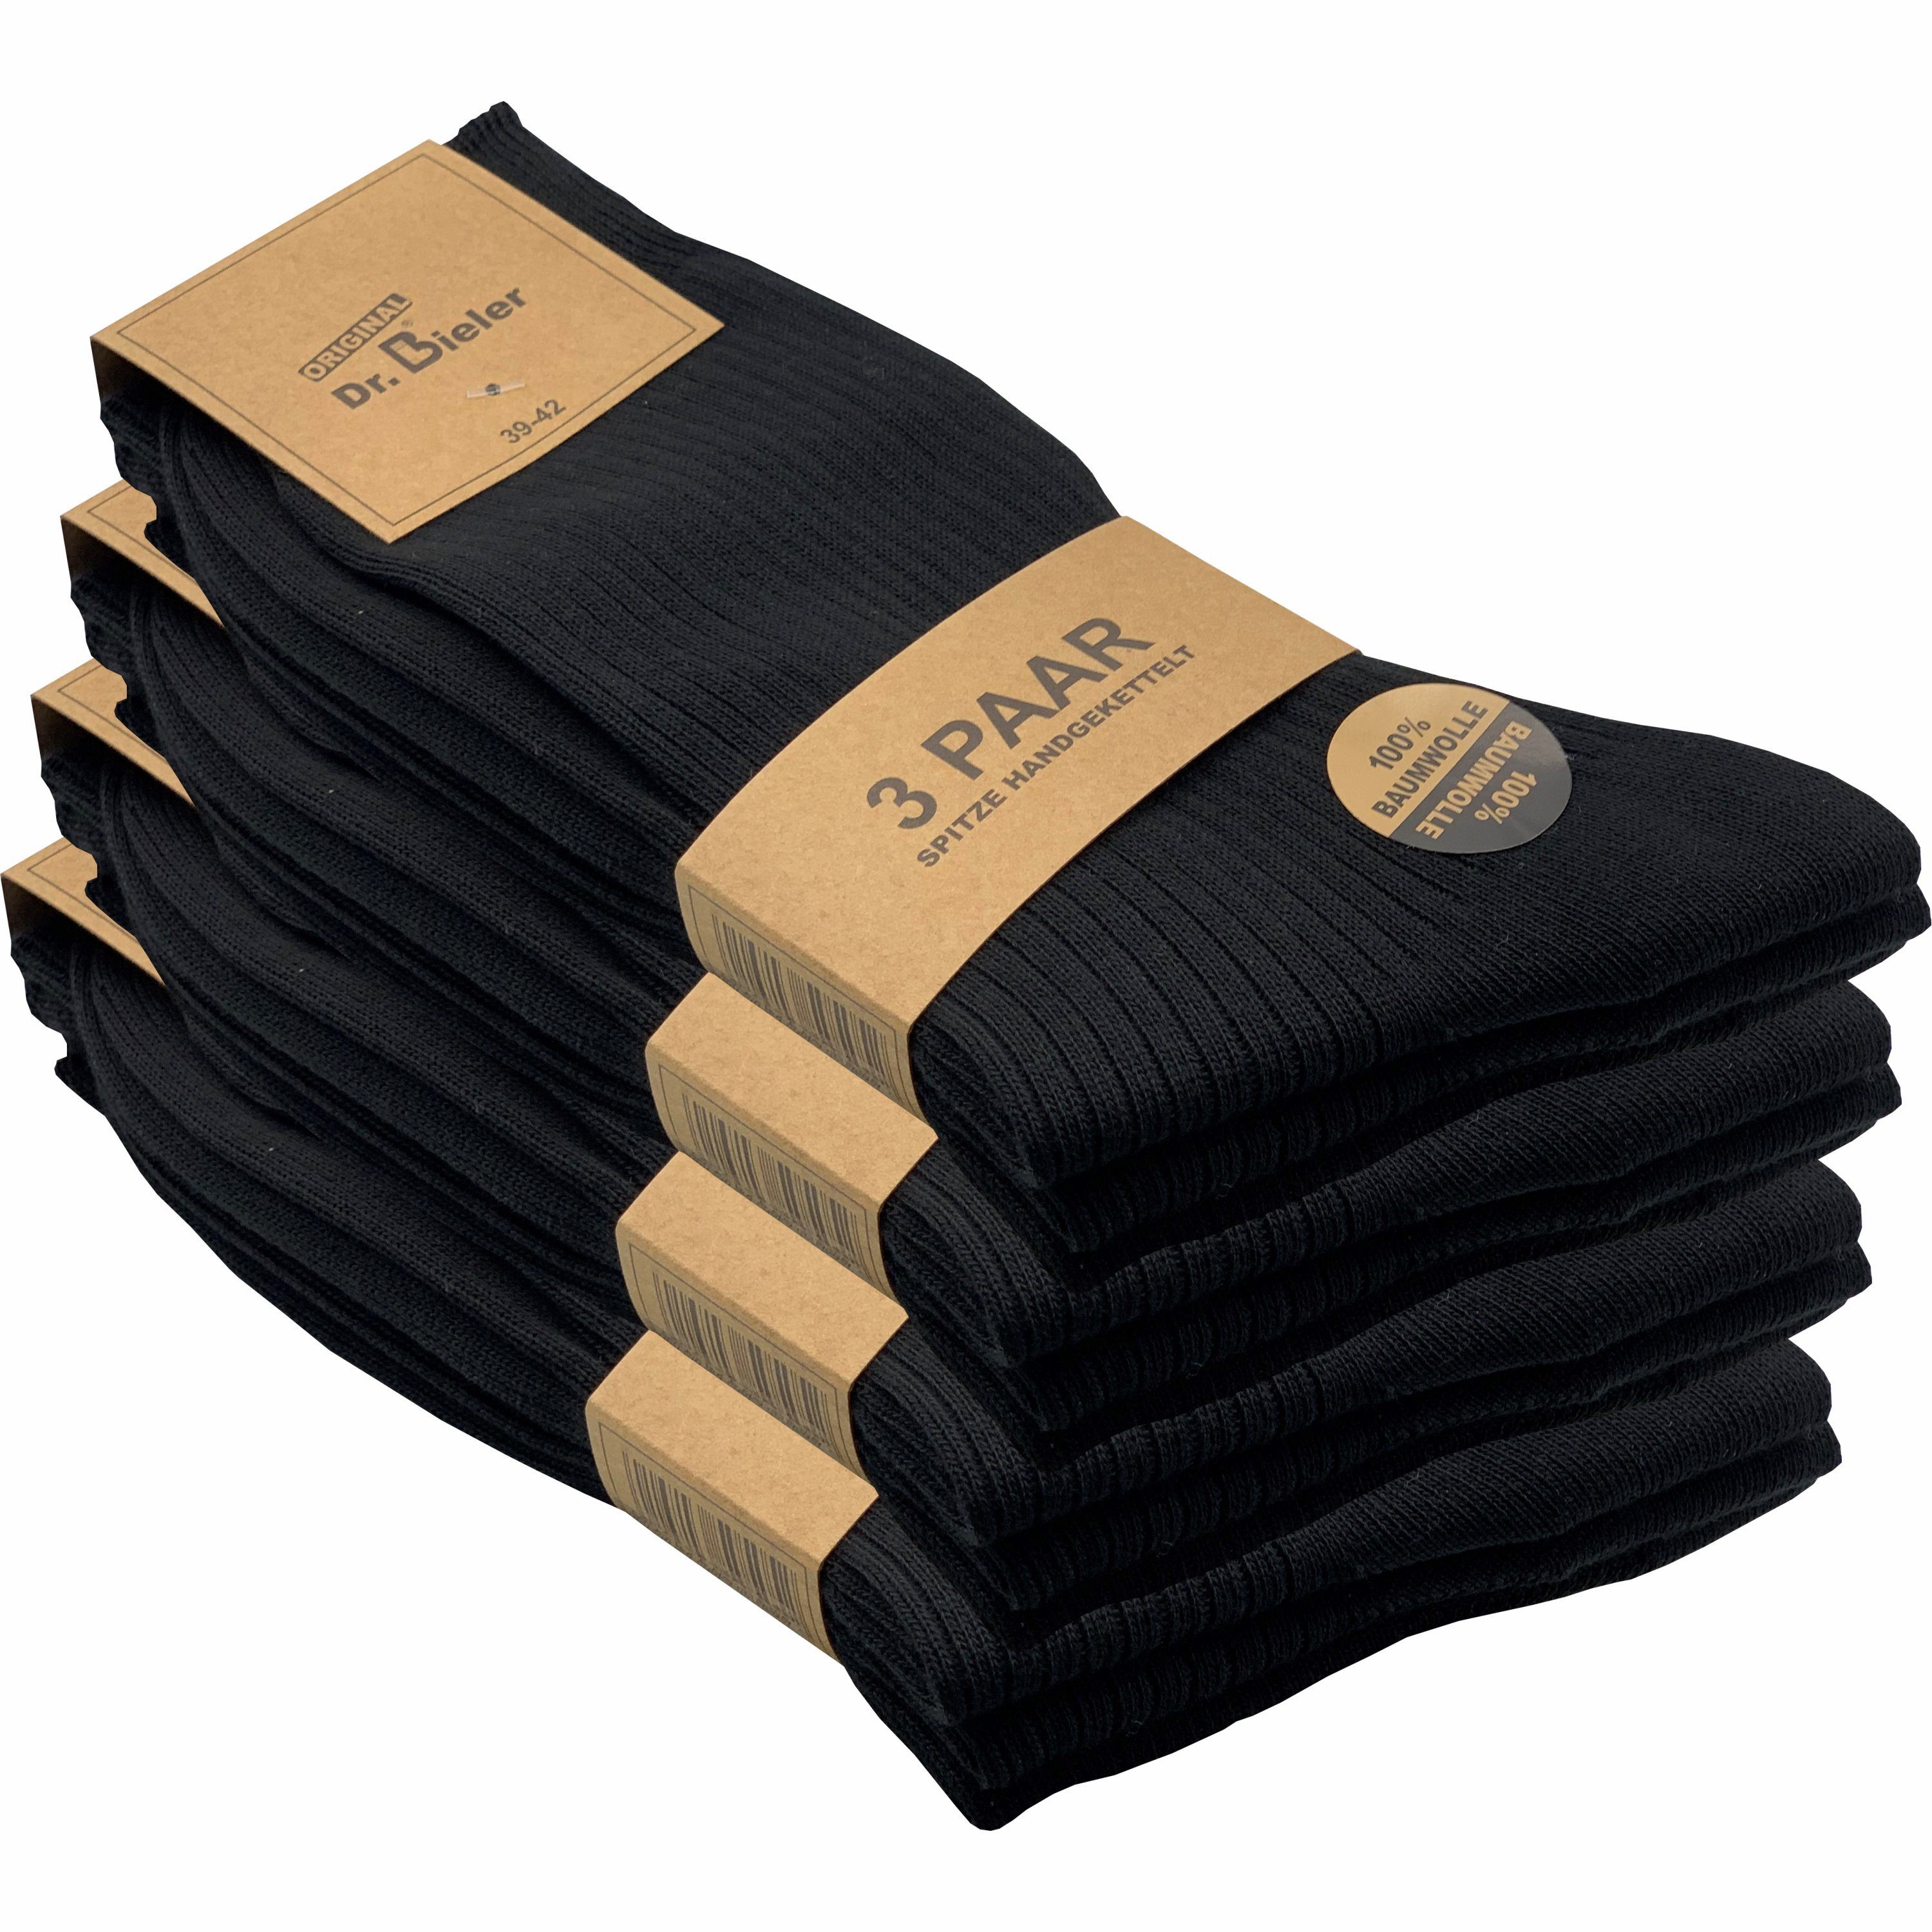 GAWILO Basicsocken für Herren aus 100% Baumwolle - ohne Gummi - ohne drückende Naht (12 Paar) in schwarz, weiß & blau - für Preisbewusste in ansprechender Qualität schwarz mit Rippe